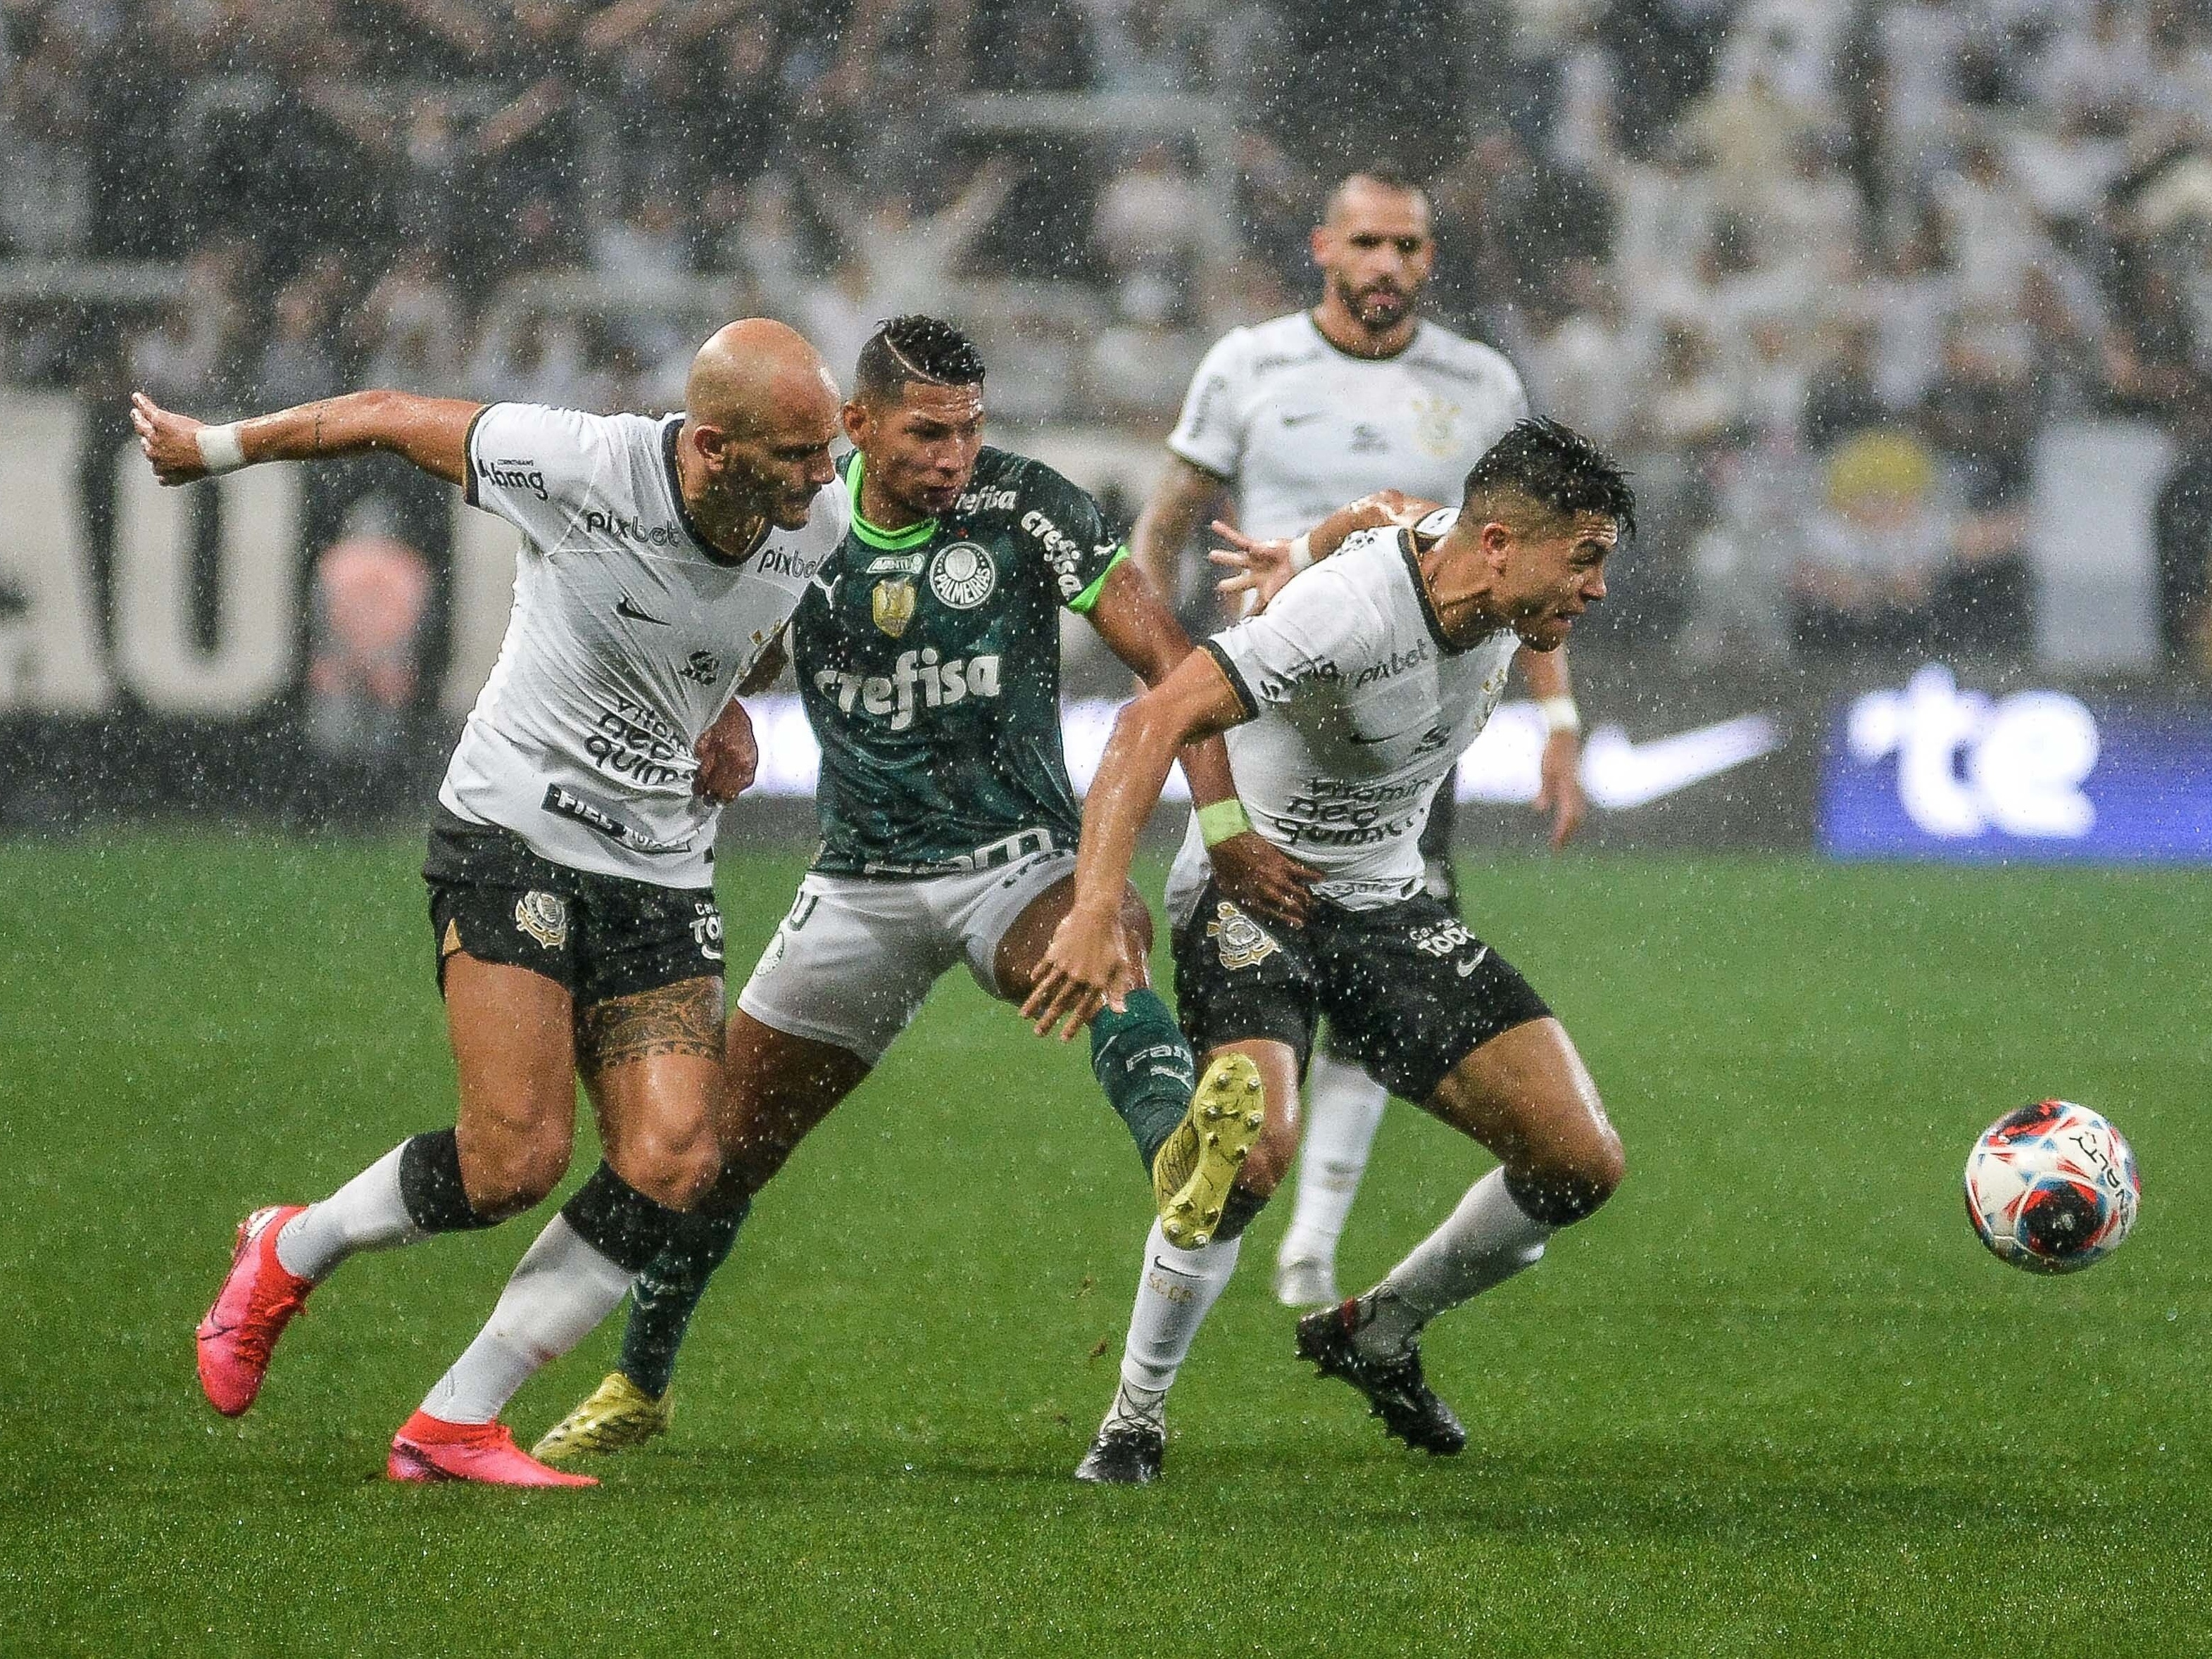 Pós-Jogo: Empate louco e resultado ruim! Corinthians empata com